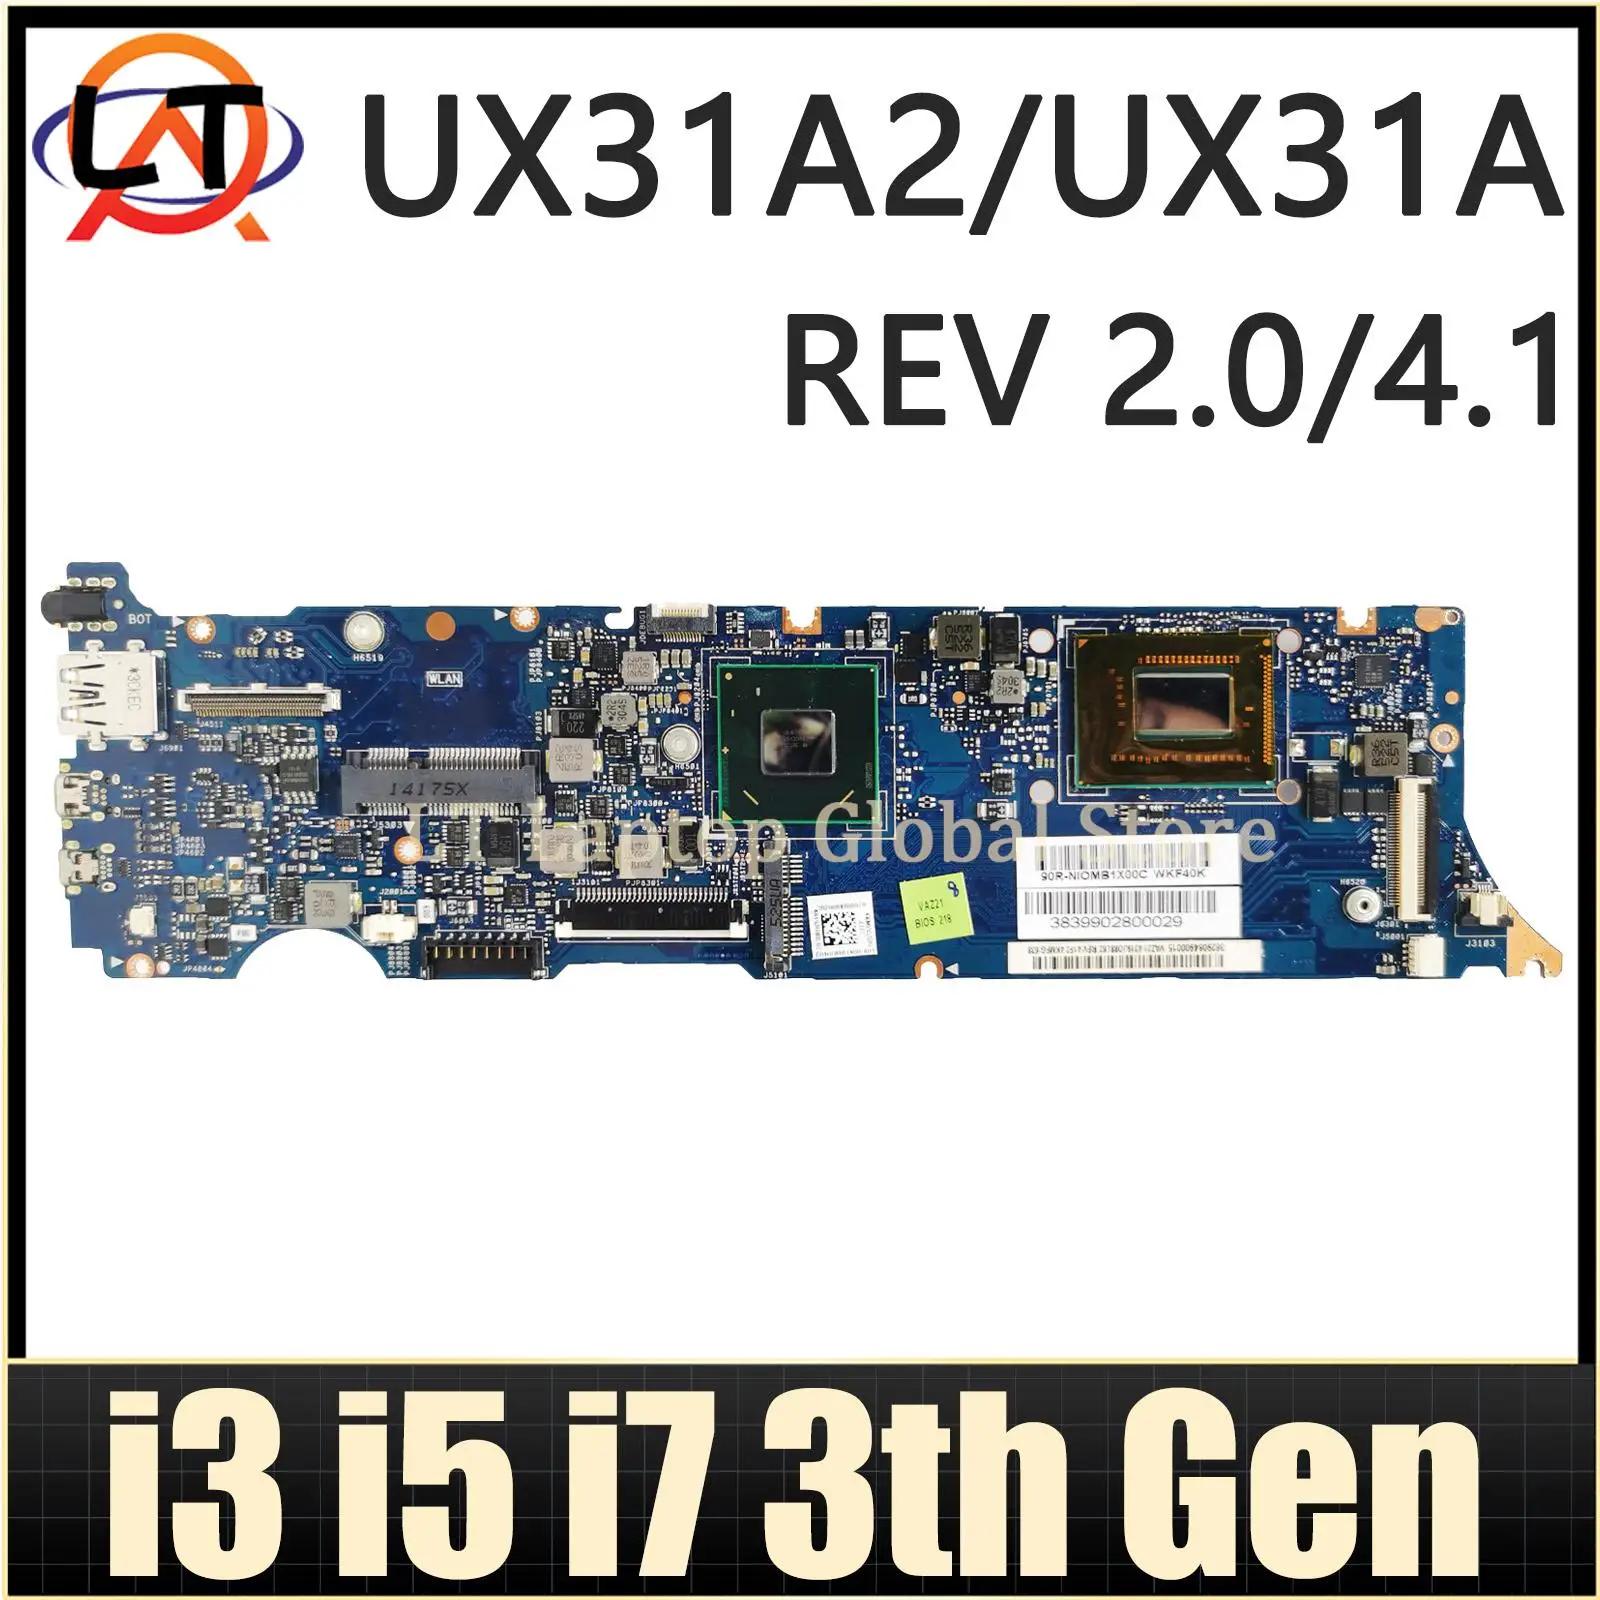 ASUS Zenbook UX31A2  Ʈ κ, I3, I5, I7, 3  CPU, 4GB RAM, REV:2.0/4.1